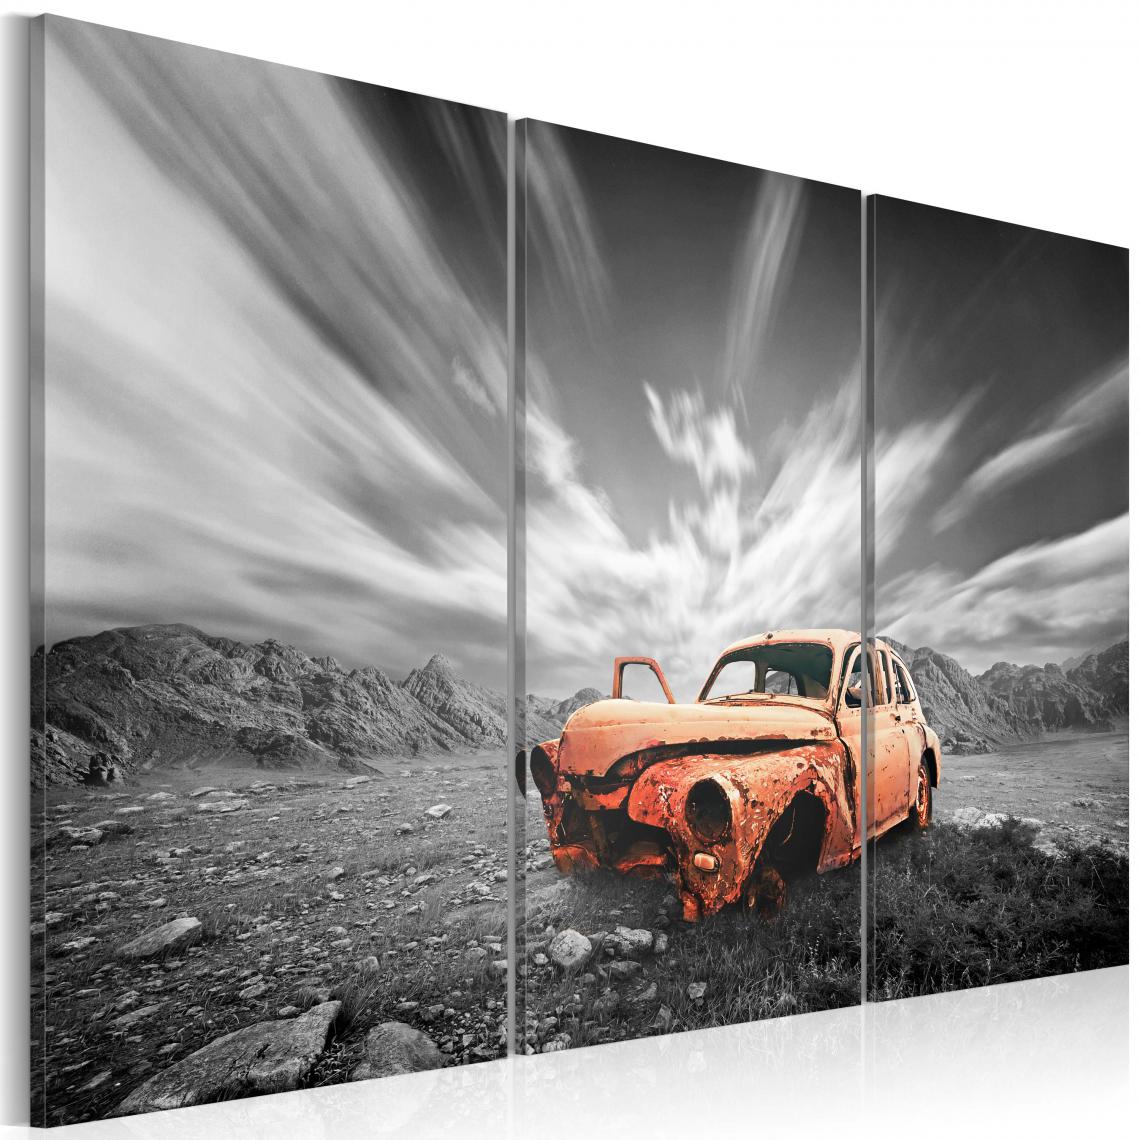 Decoshop26 - Tableau sur toile en 3 panneaux décoration murale image imprimée cadre en bois à suspendre Vieille voiture 120x80 cm 11_0009658 - Tableaux, peintures